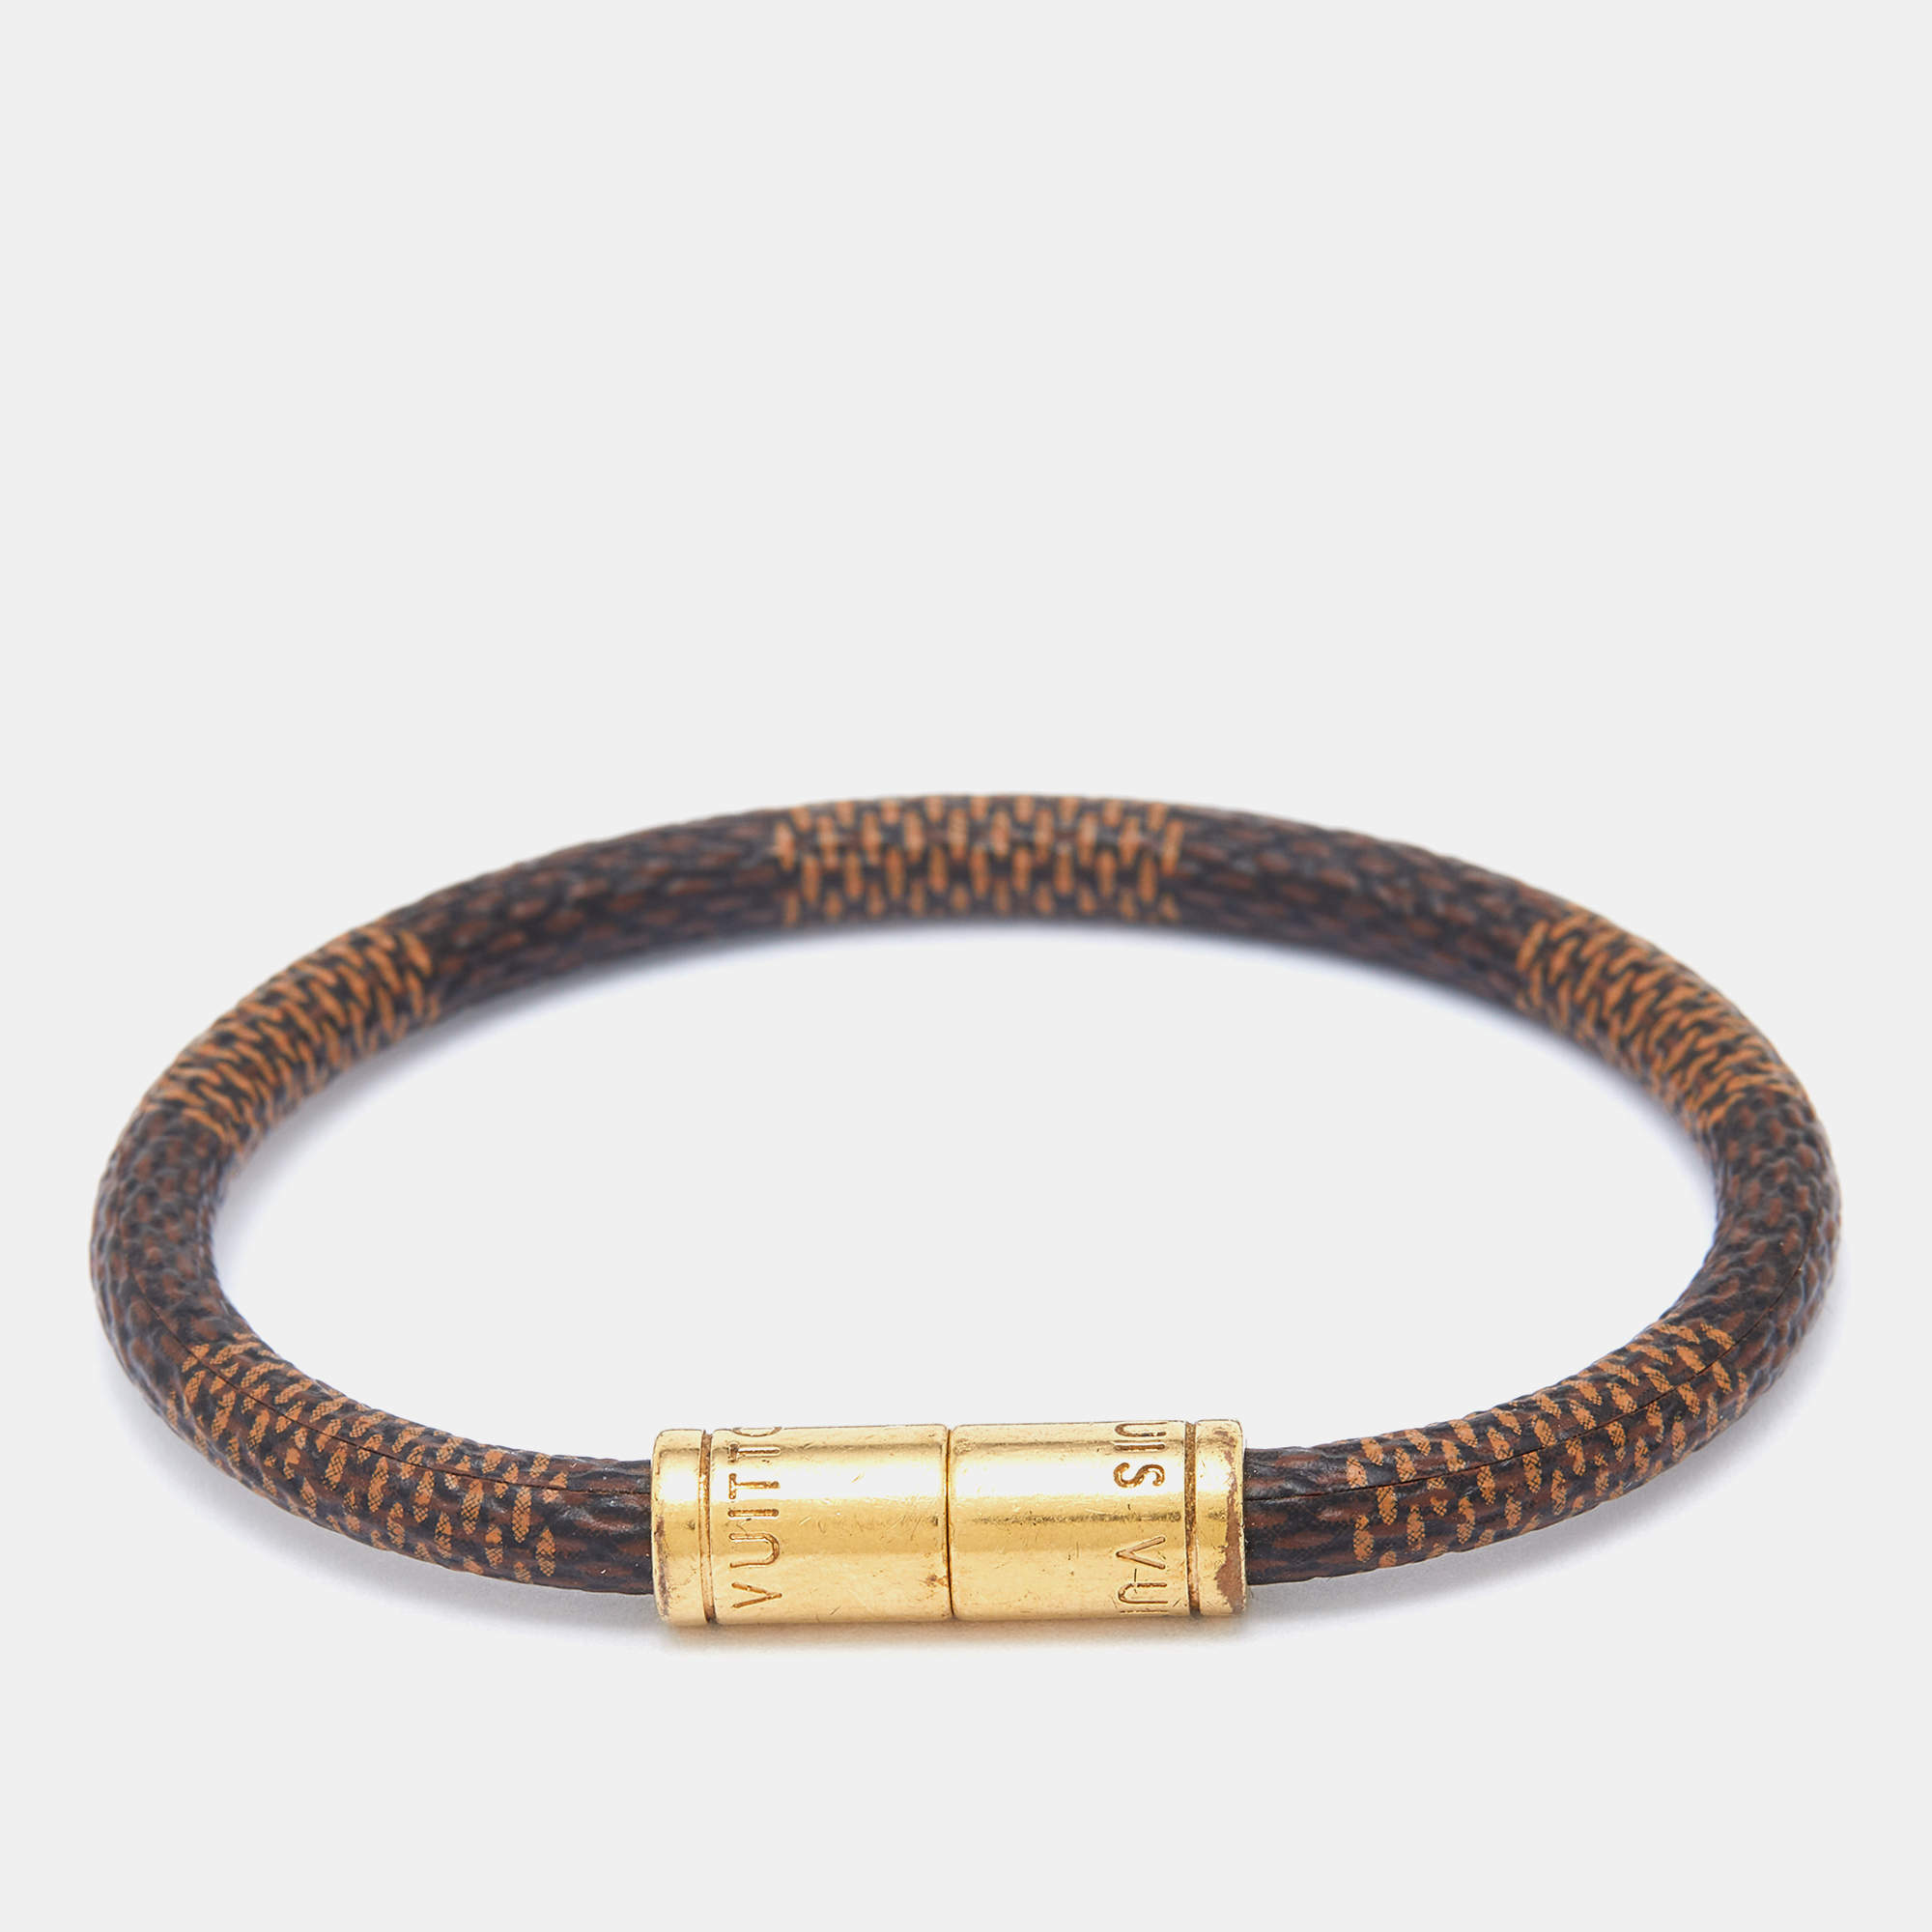 Louis Vuitton Damier Keep it bracelet Damier Canvas Bangle